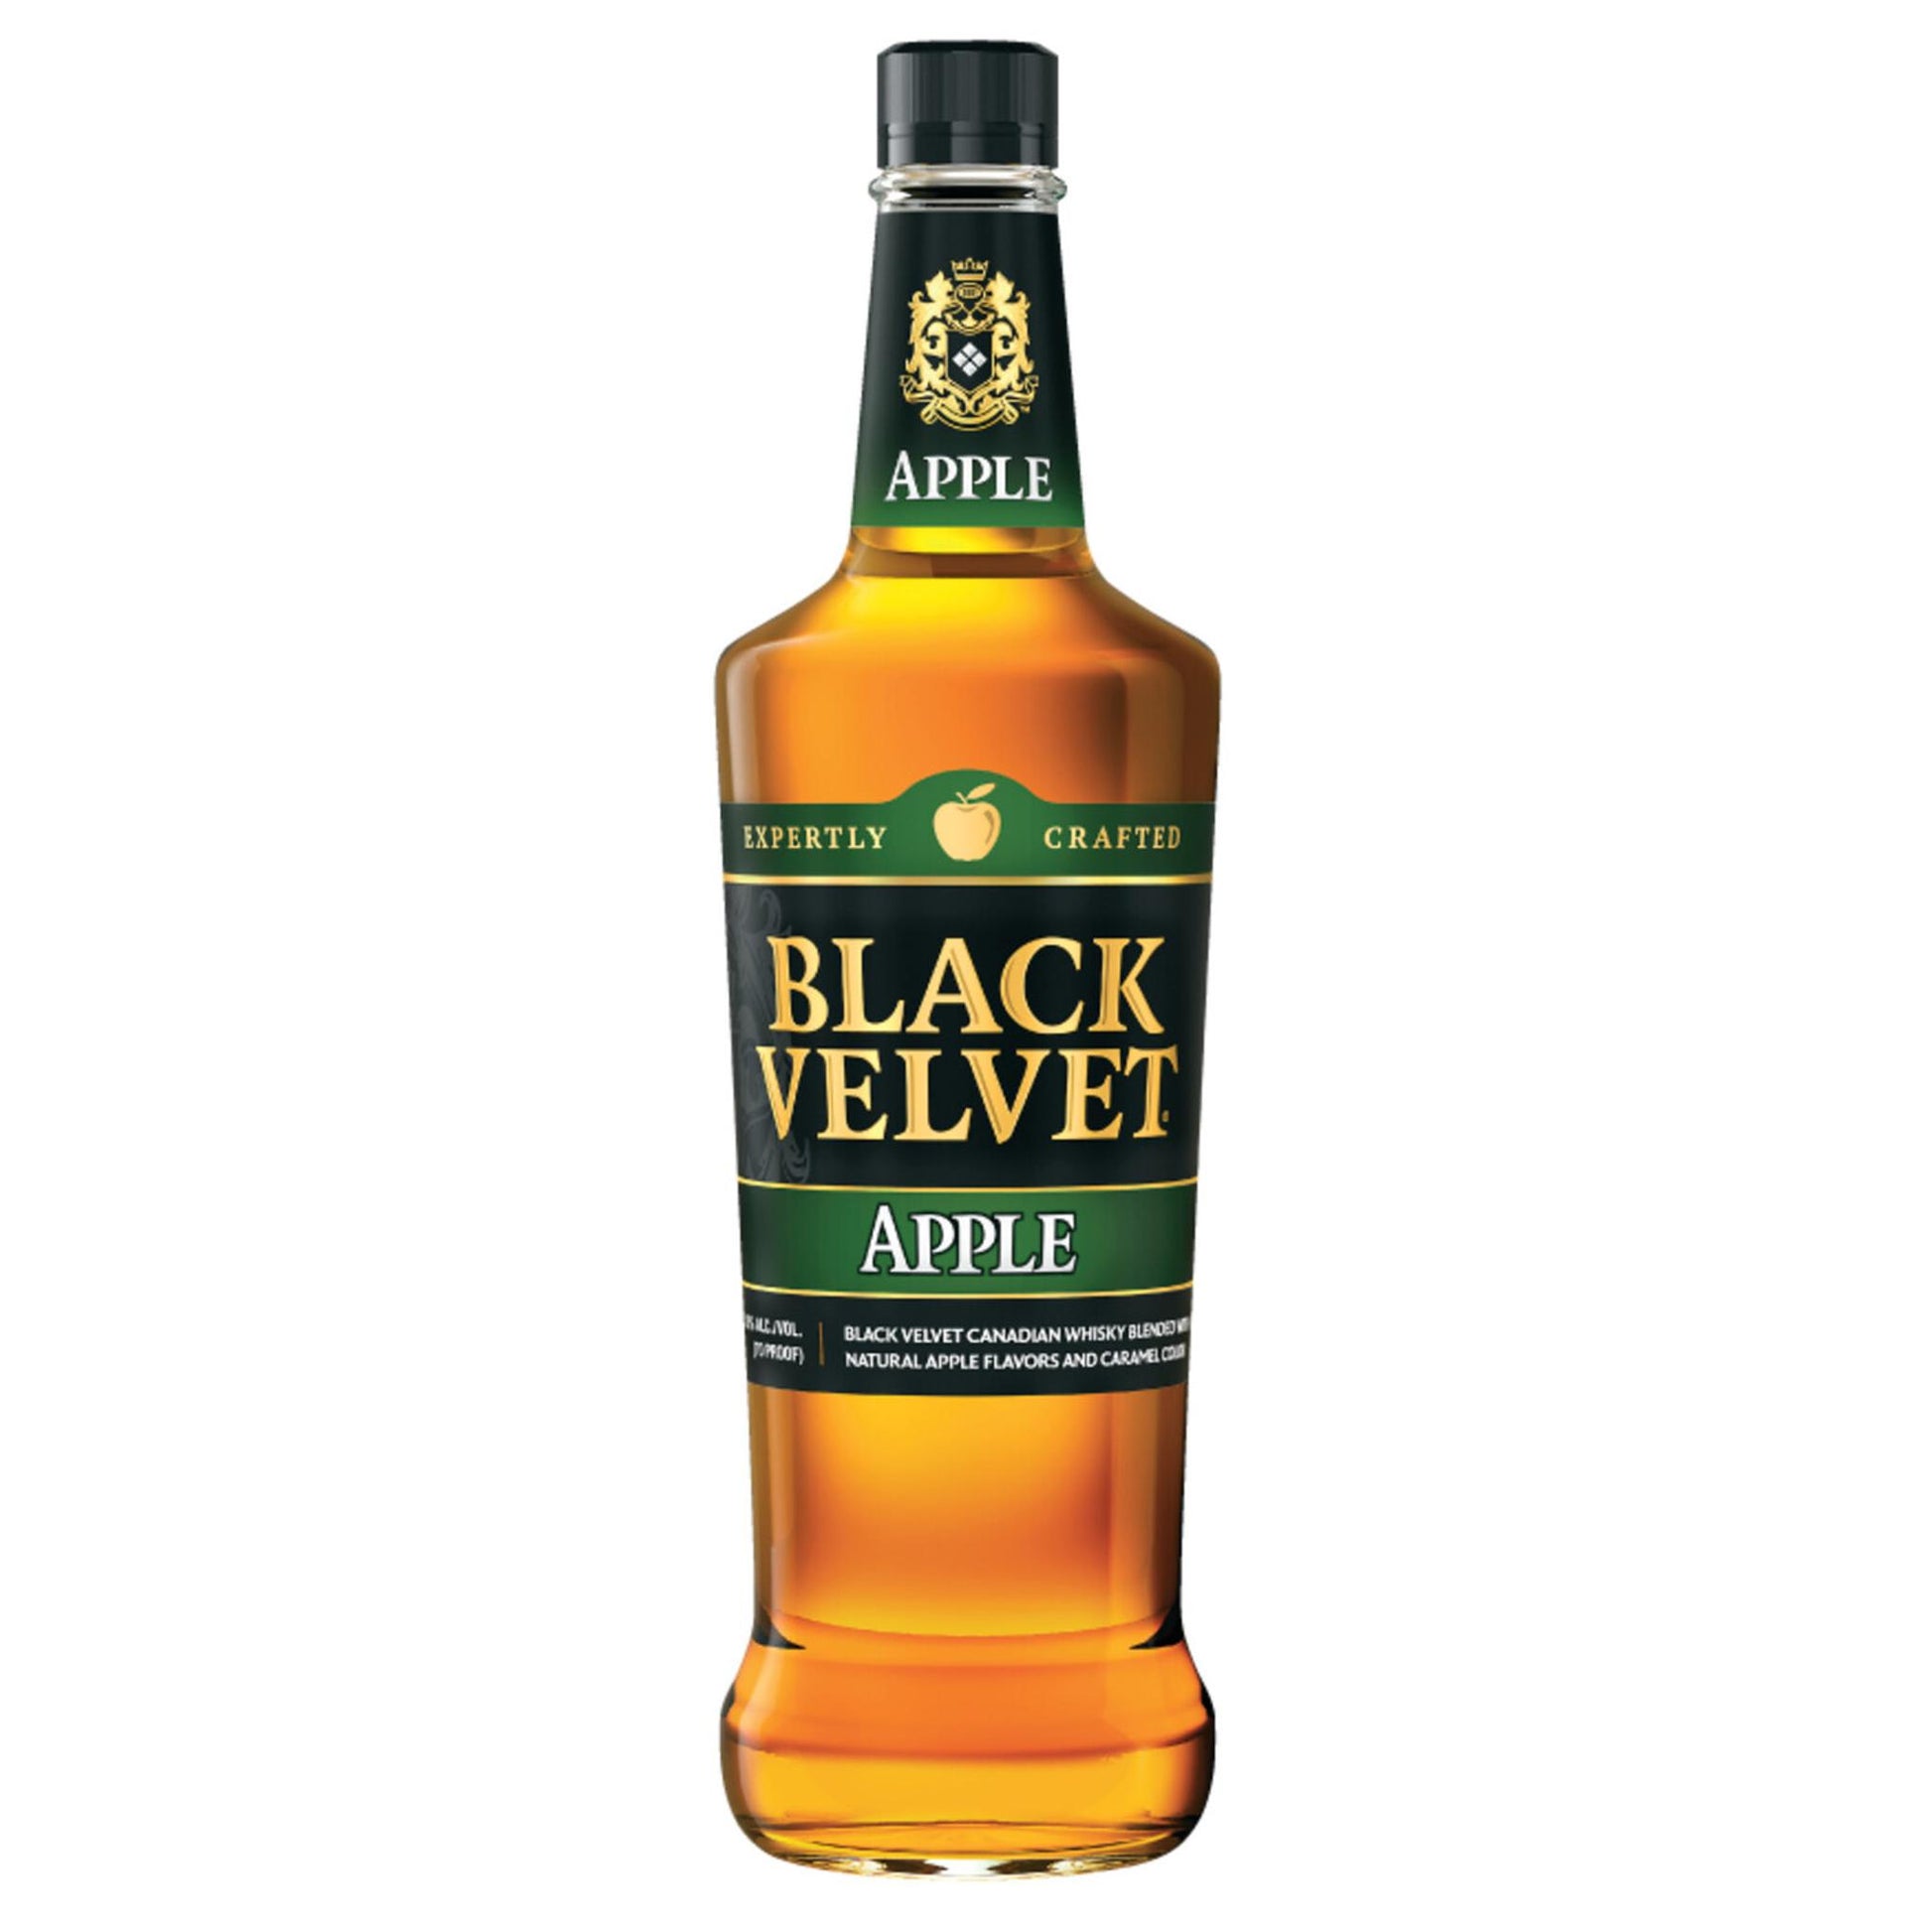 Black Velvet Apple Flavored Whisky - Liquor Geeks